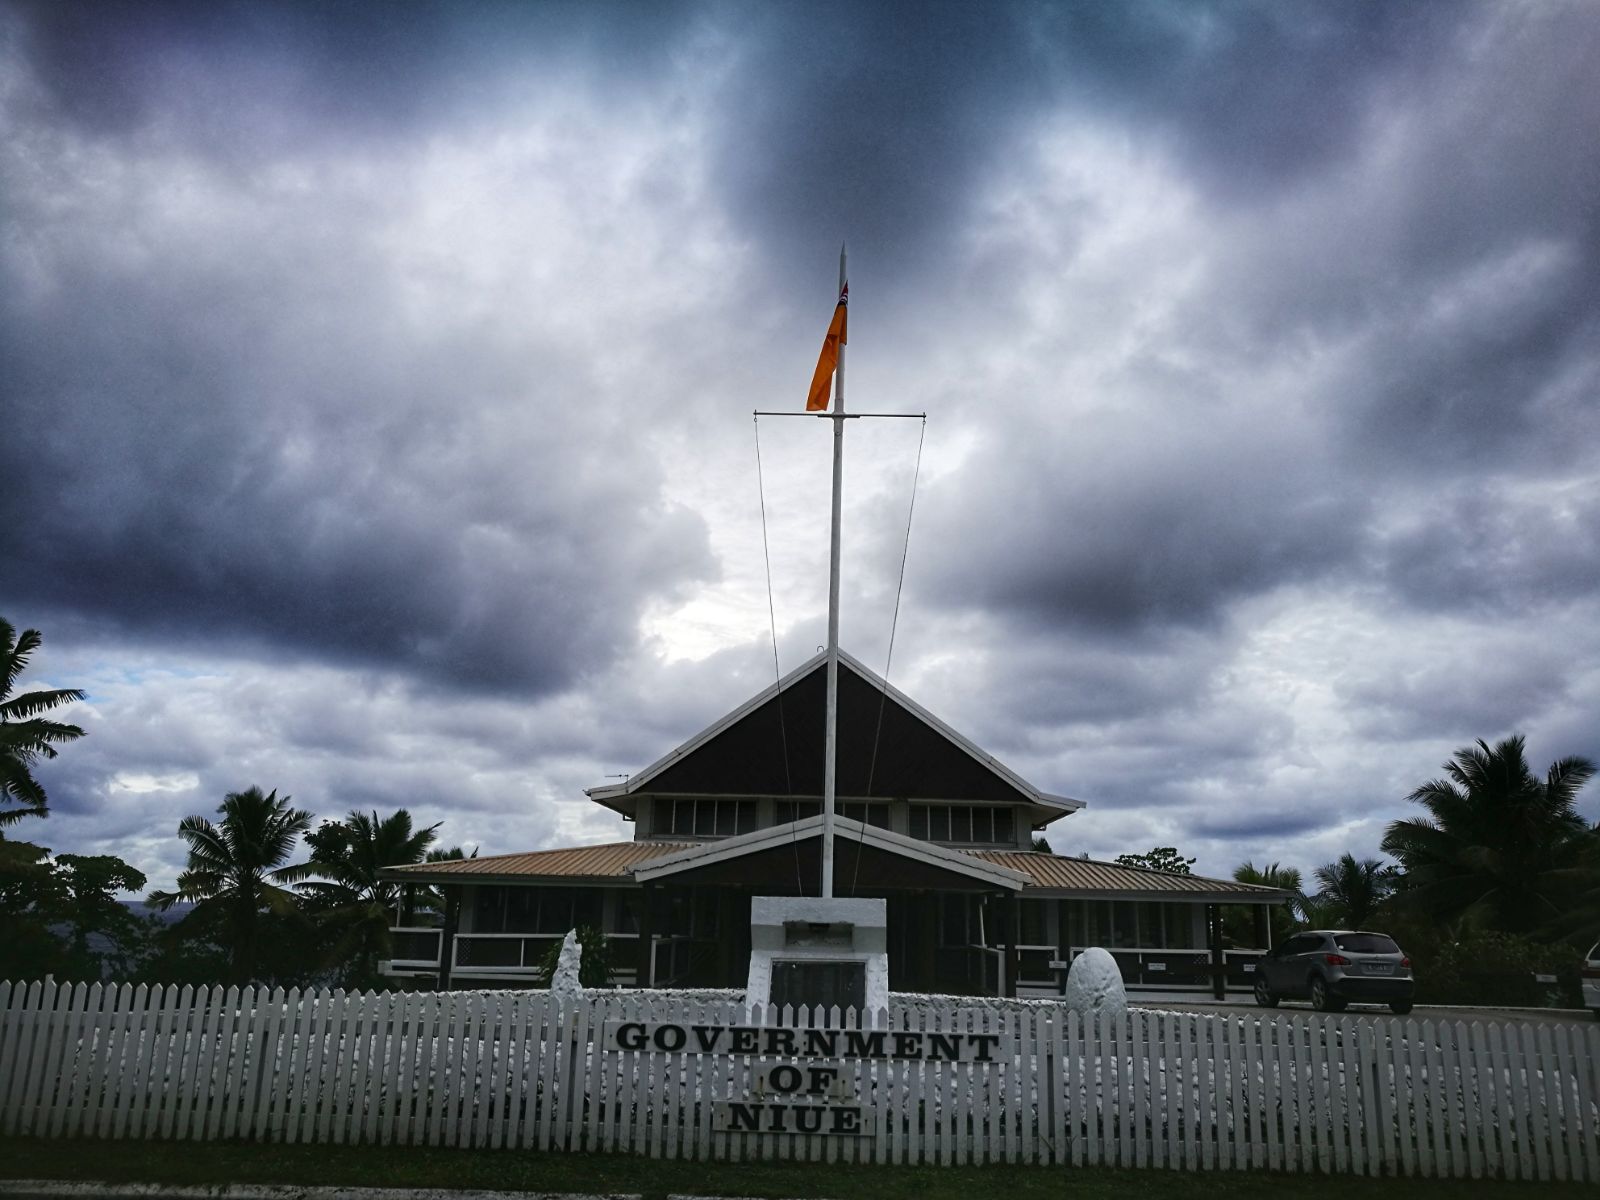 纽埃  纽埃岛（Niuē），简称纽埃，位于南太平洋国际日期变更线东侧的一个岛国，是一个有独立主权的国